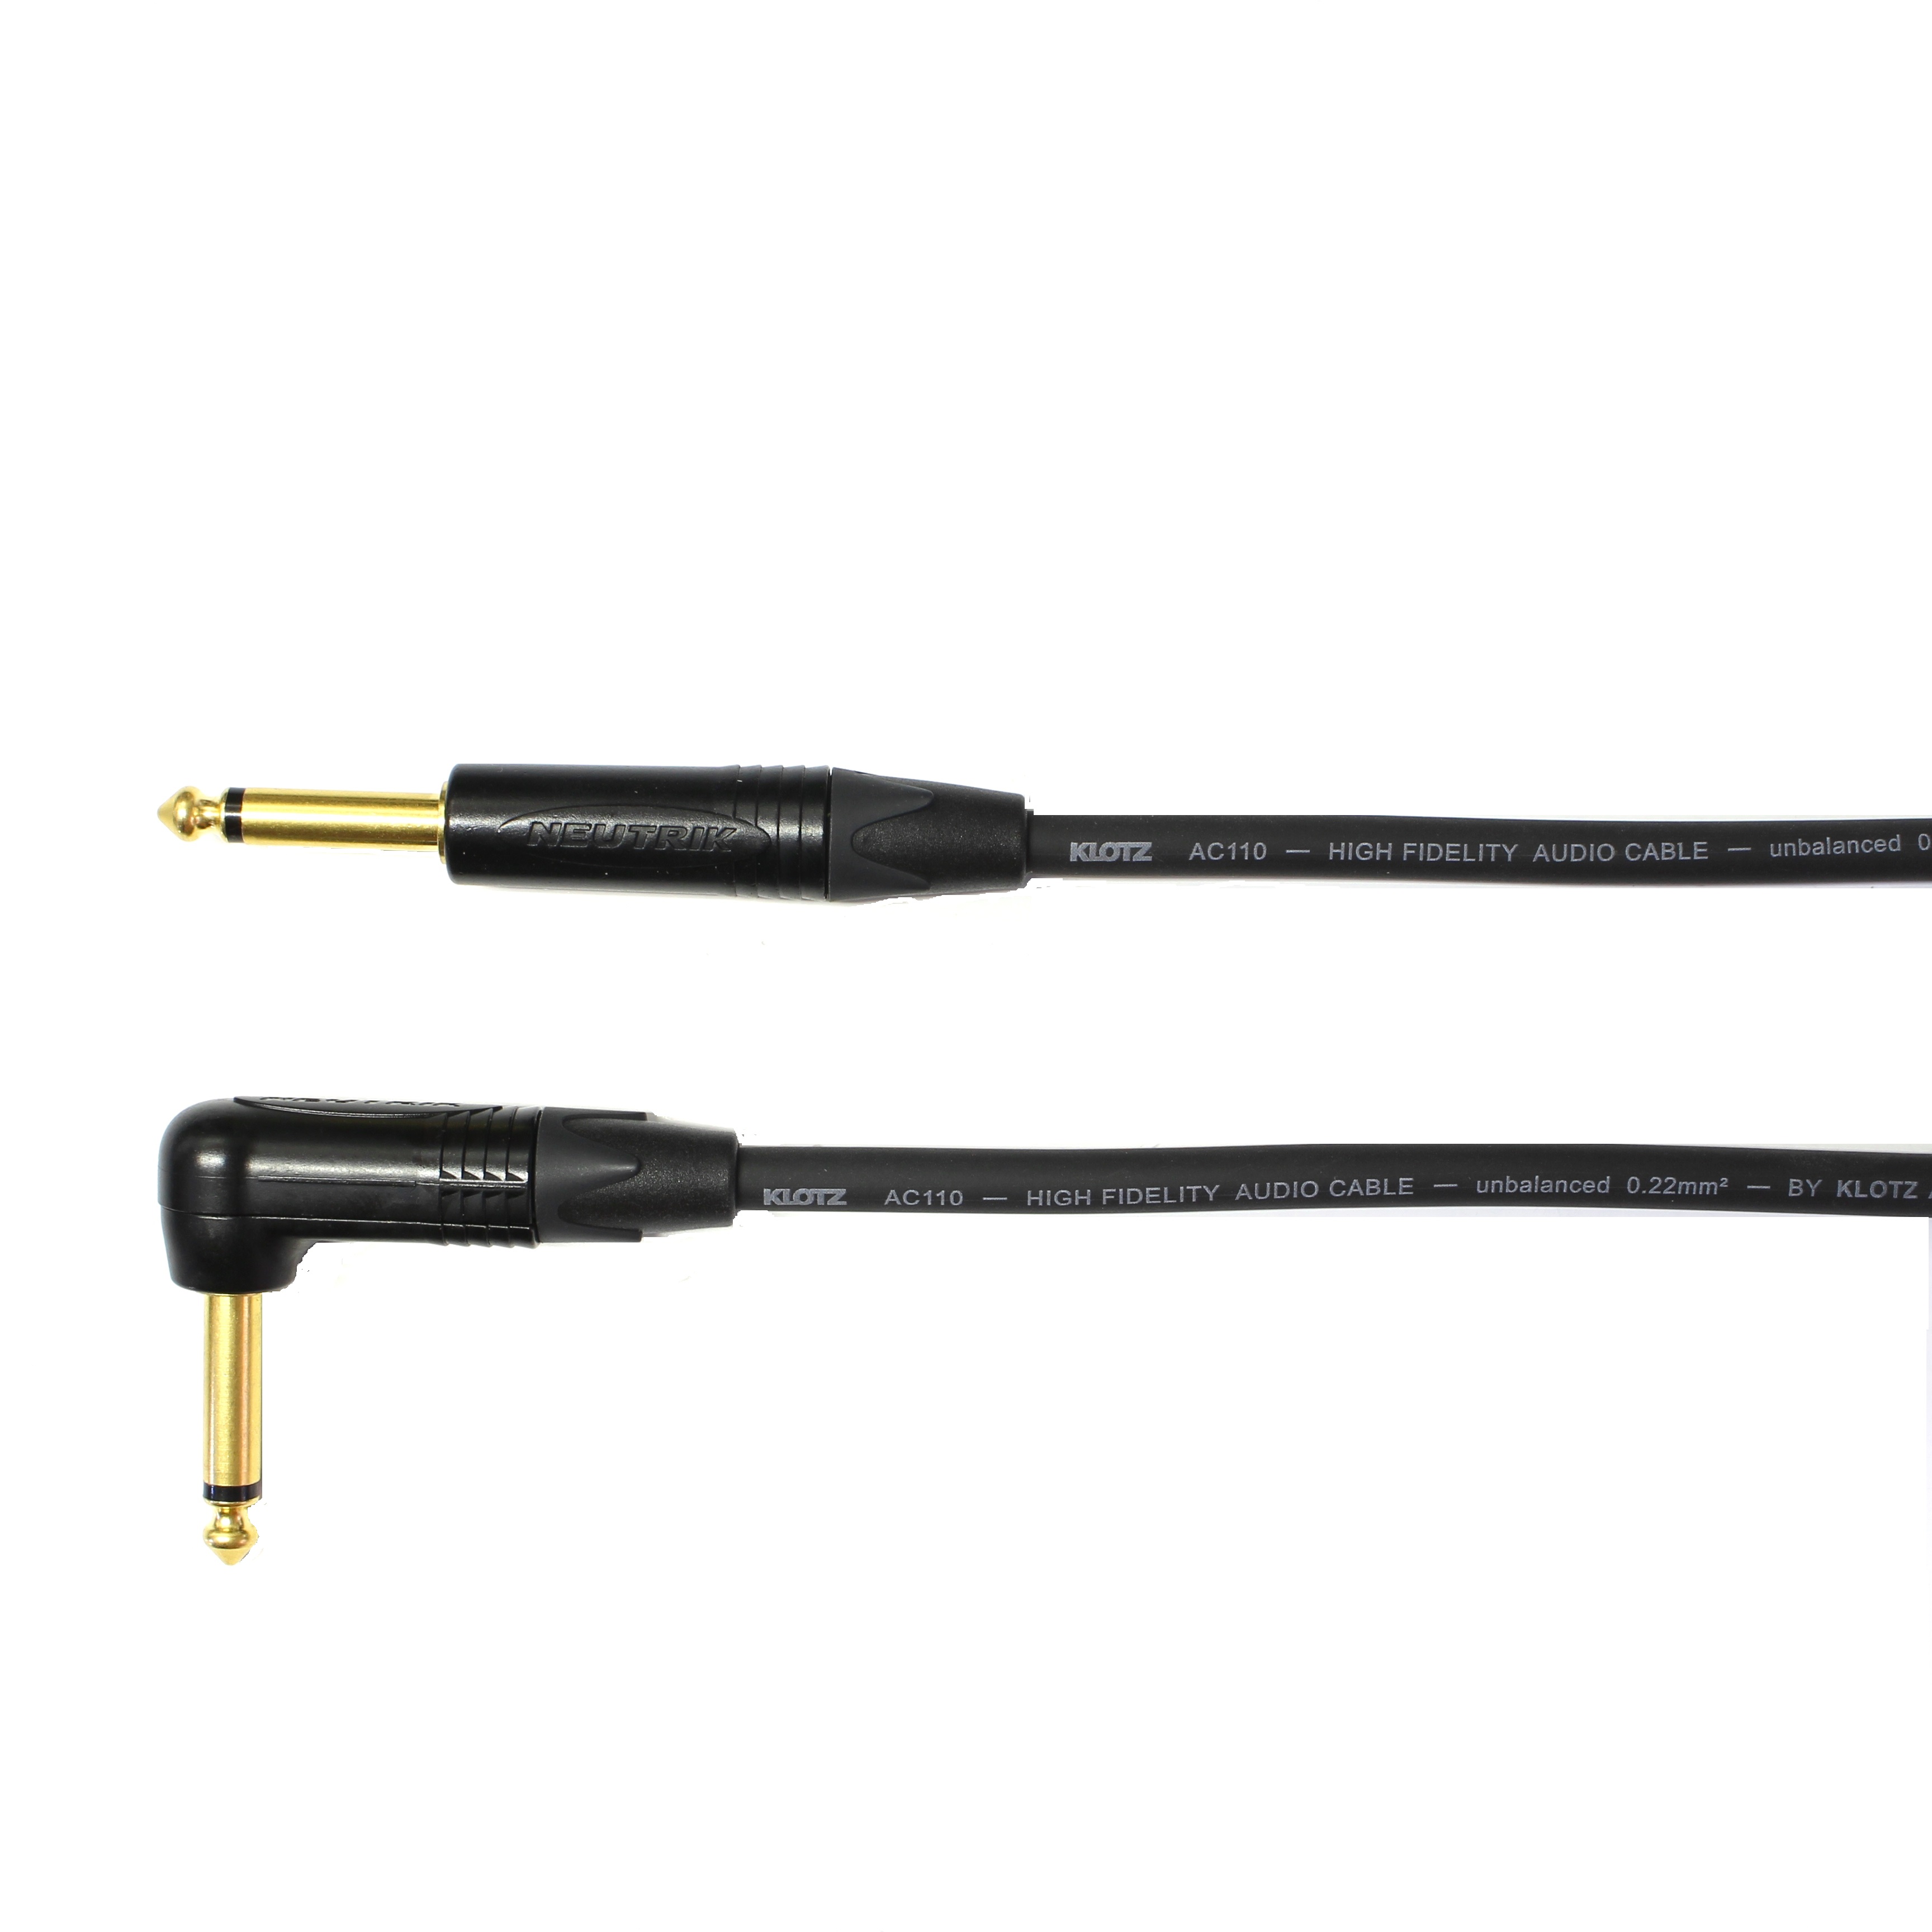 Kytarový kabel Jack 6,3 mono přímý/ Jack 6,3 mono úhlový, 5 m, AC110